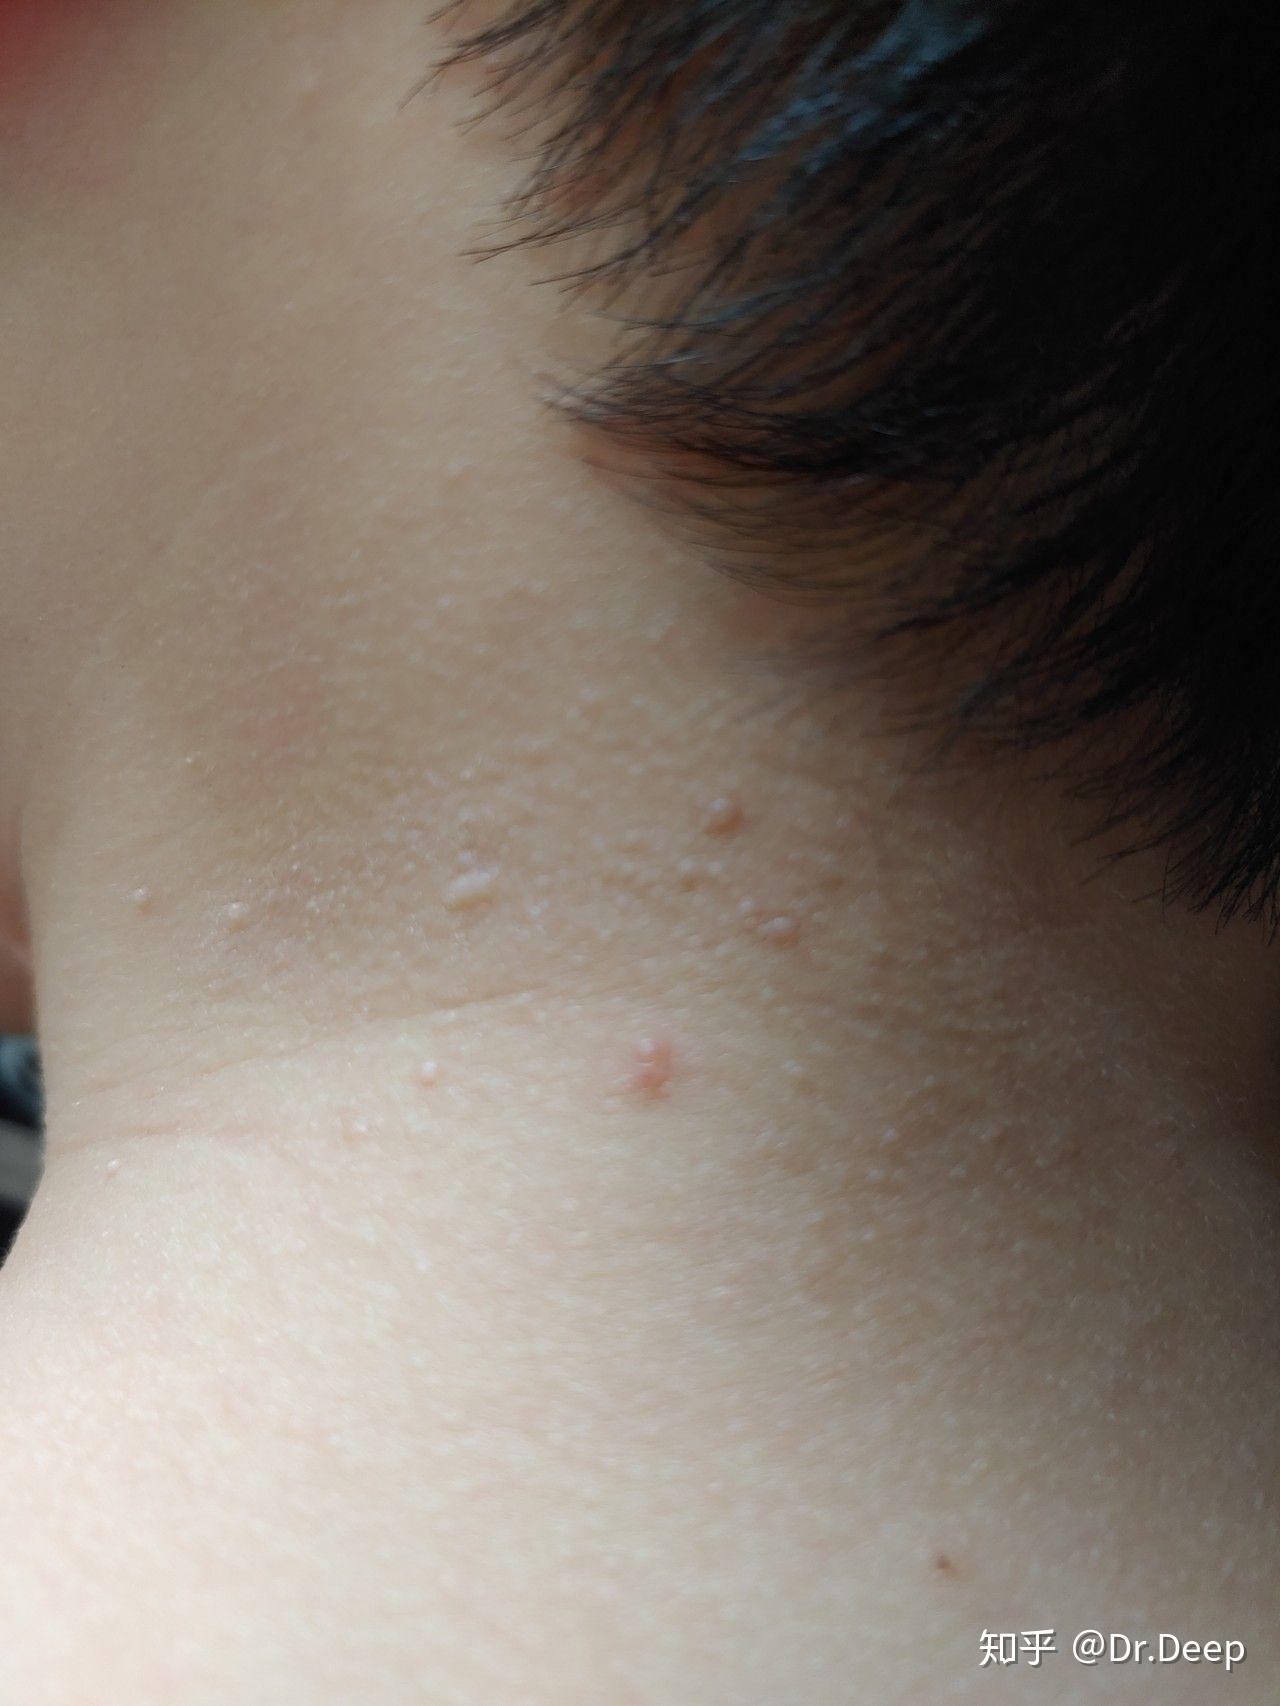 儿童传染性软疣能否自愈,会不会长到眼睛上,造成不可逆的损伤? 